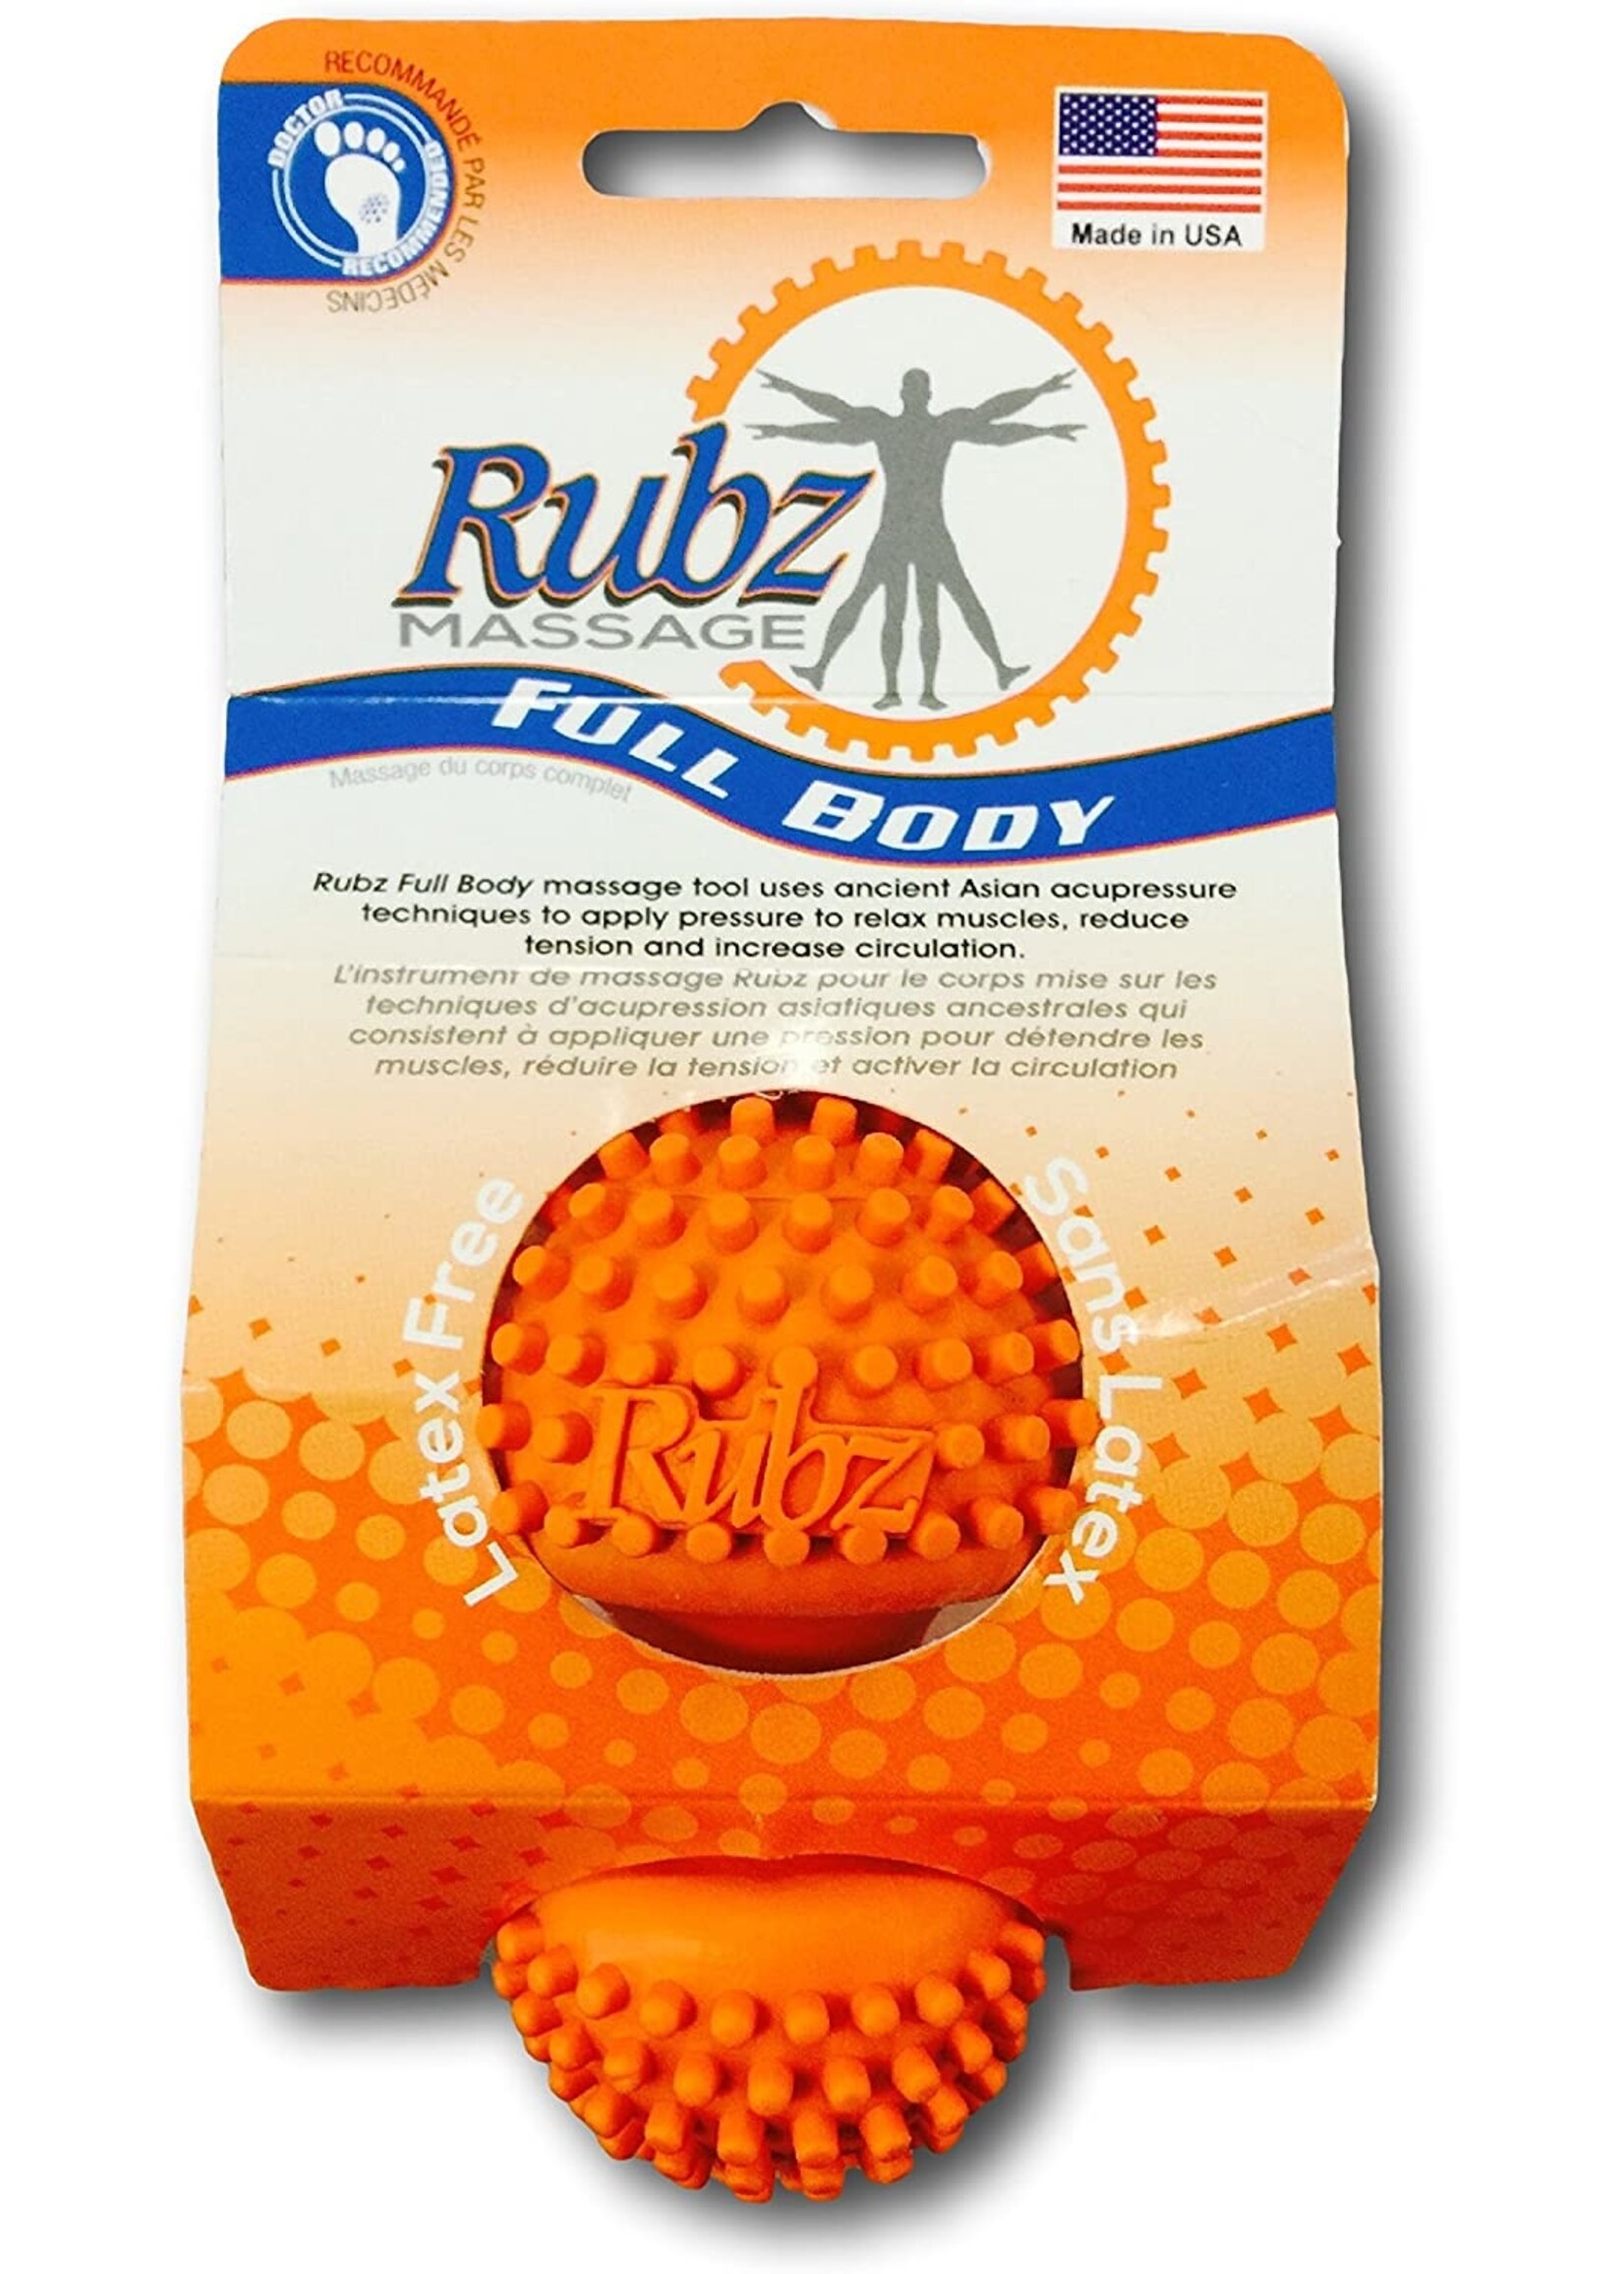 Duenorth Rubz Massage Full body